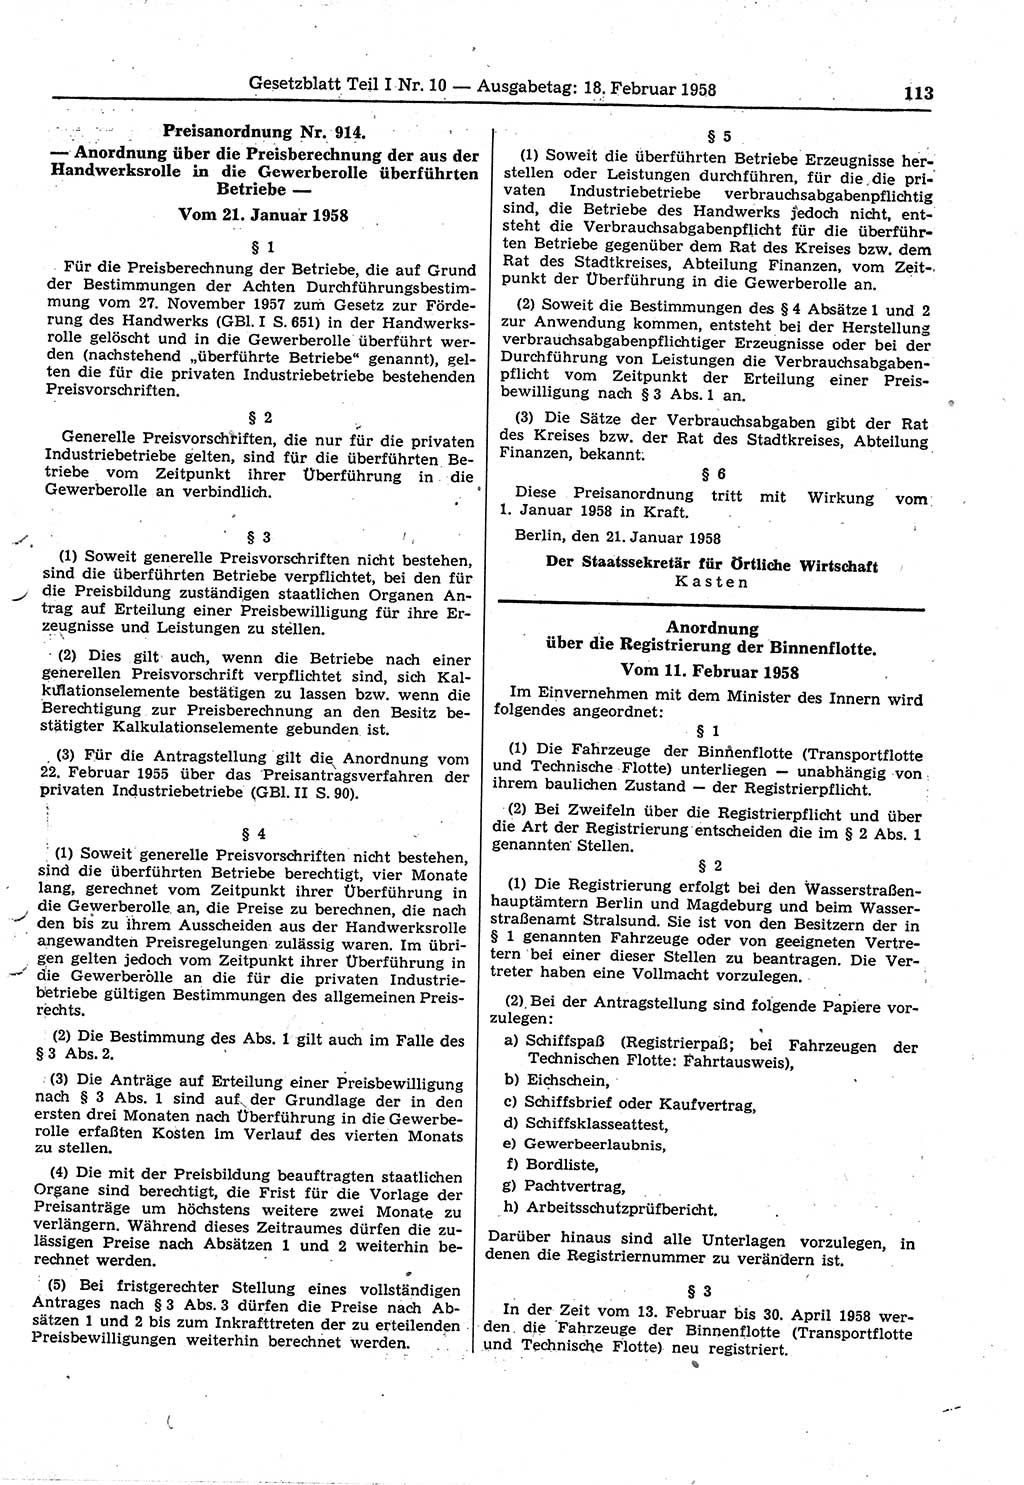 Gesetzblatt (GBl.) der Deutschen Demokratischen Republik (DDR) Teil Ⅰ 1958, Seite 113 (GBl. DDR Ⅰ 1958, S. 113)